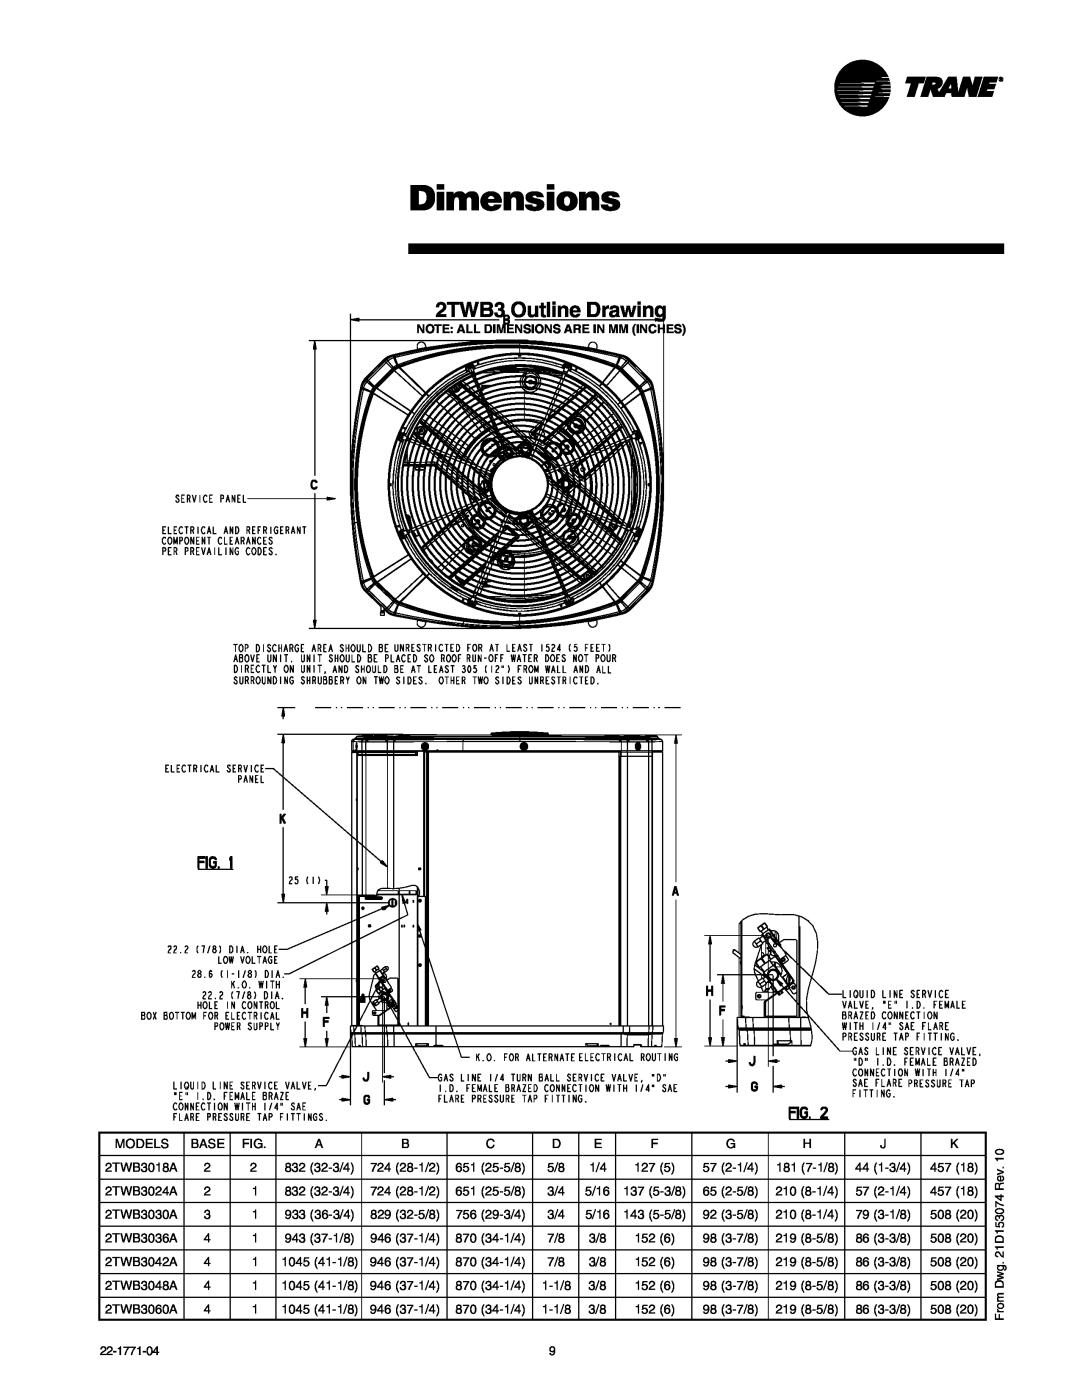 Trane 2TWB3018-060 manual Dimensions, 2TWB3 Outline Drawing 